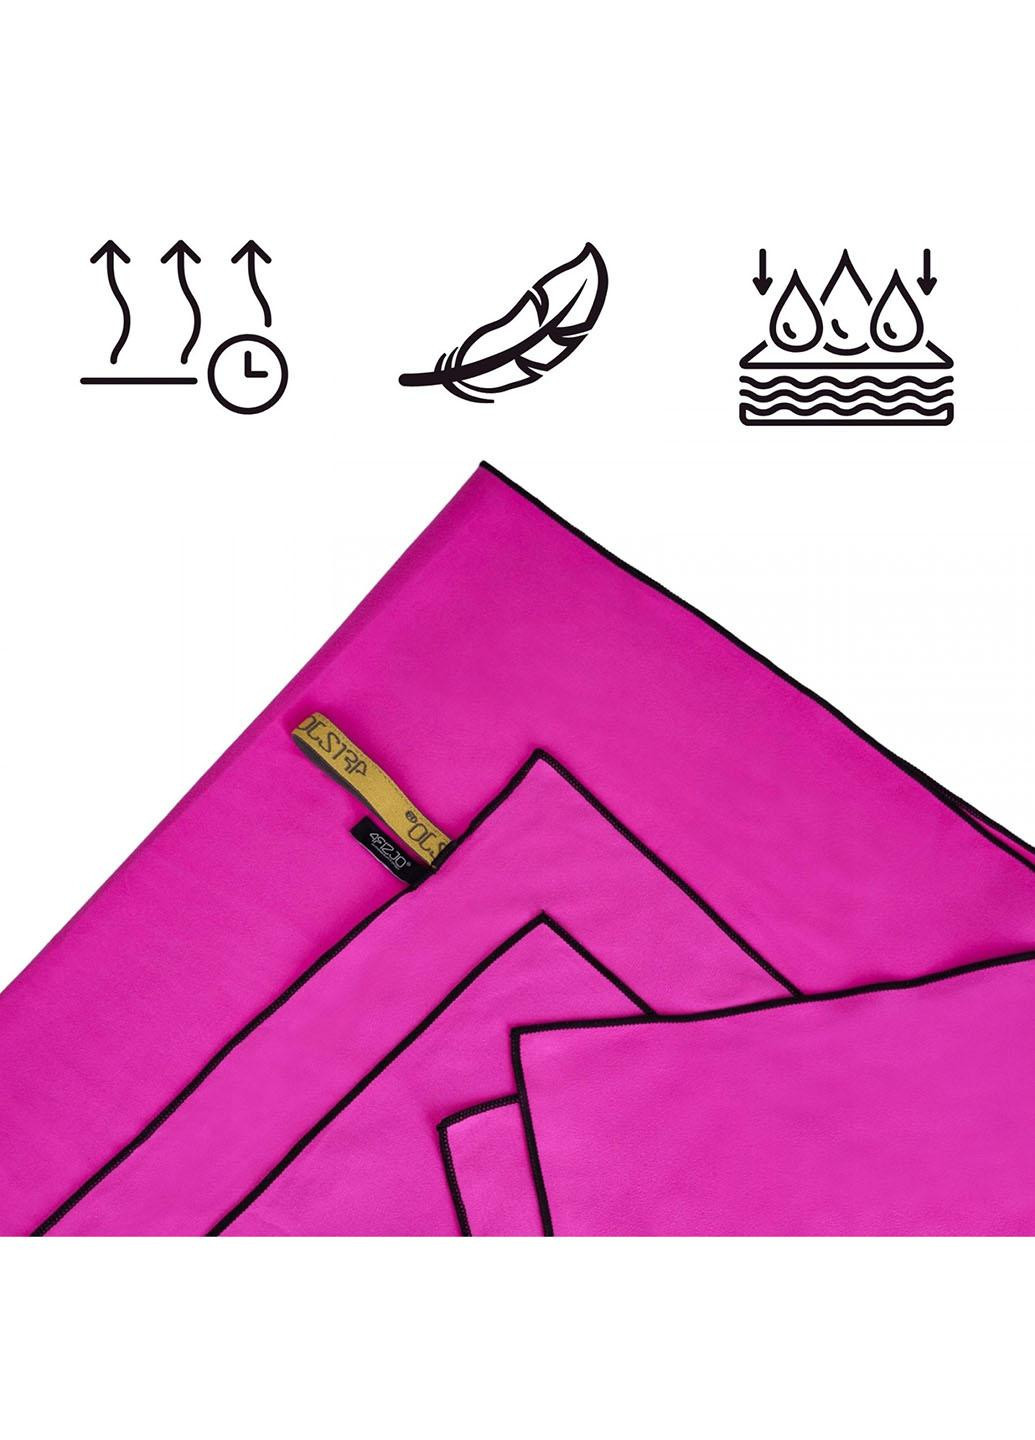 4FIZJO рушник спортивний xl 180 x 100 см з мікрофібри 4fj0433 pink рожевий виробництво -